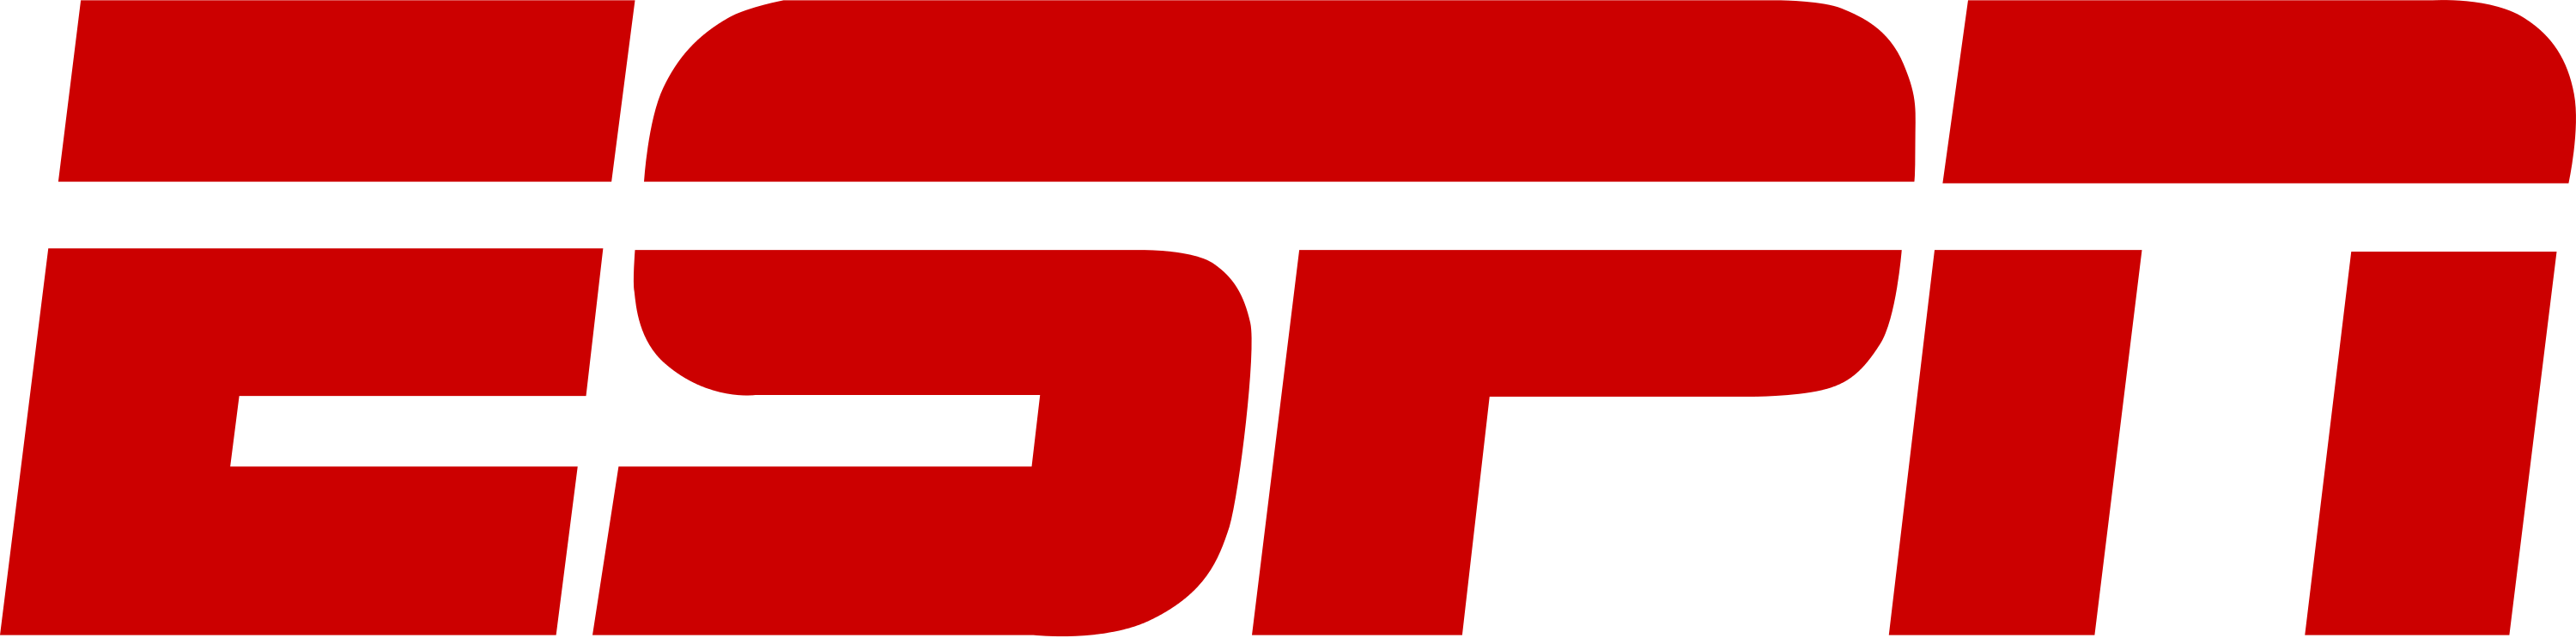 ESPN-Logo PNG-Bild HQ